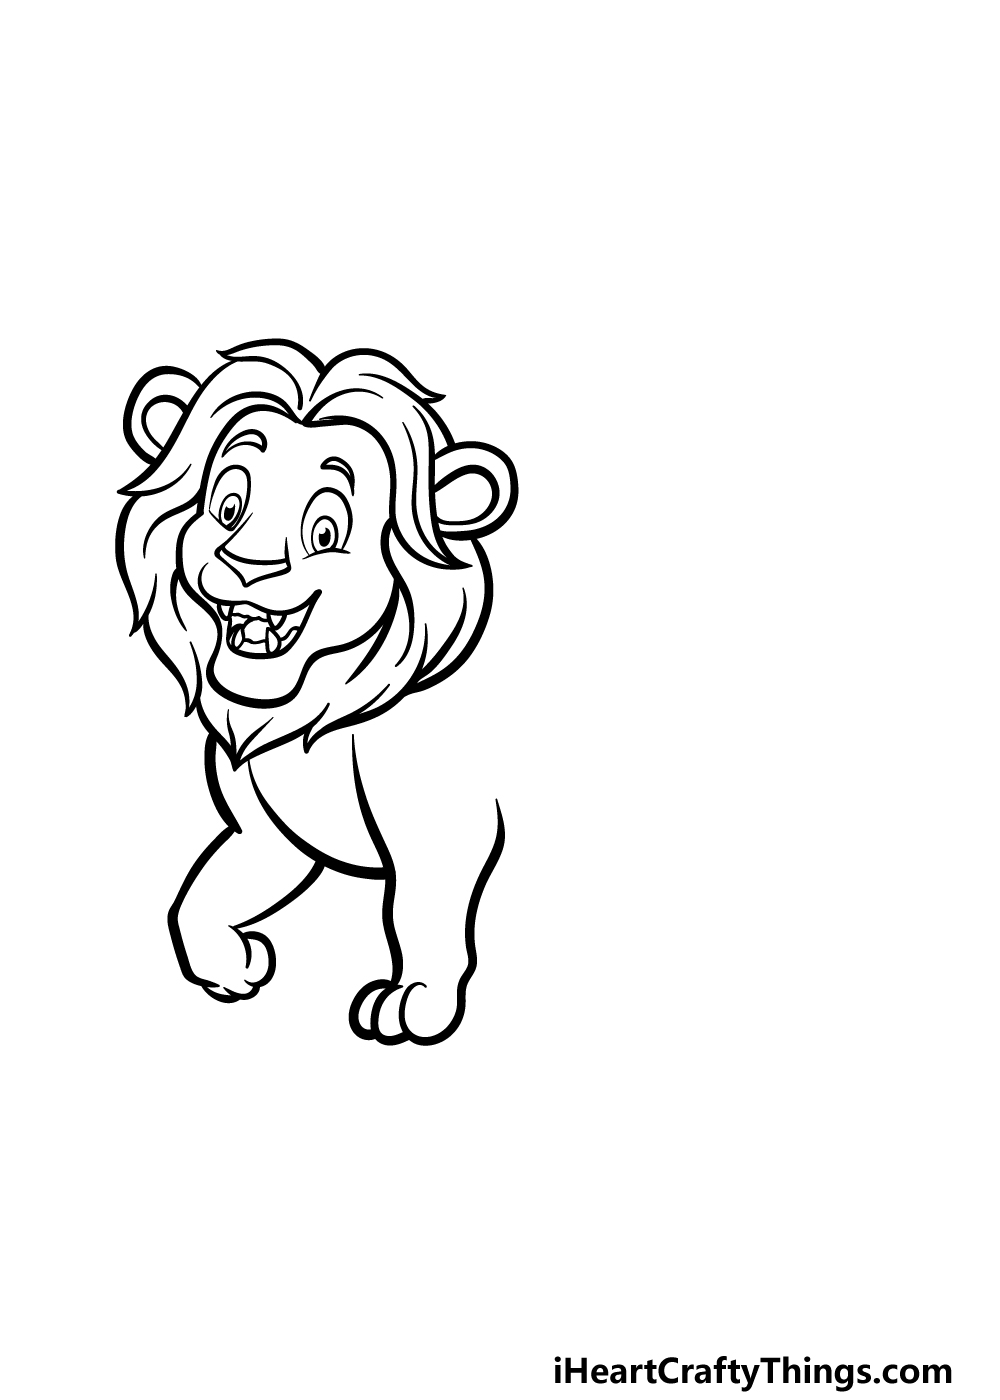 how to draw a cartoon lion step 3